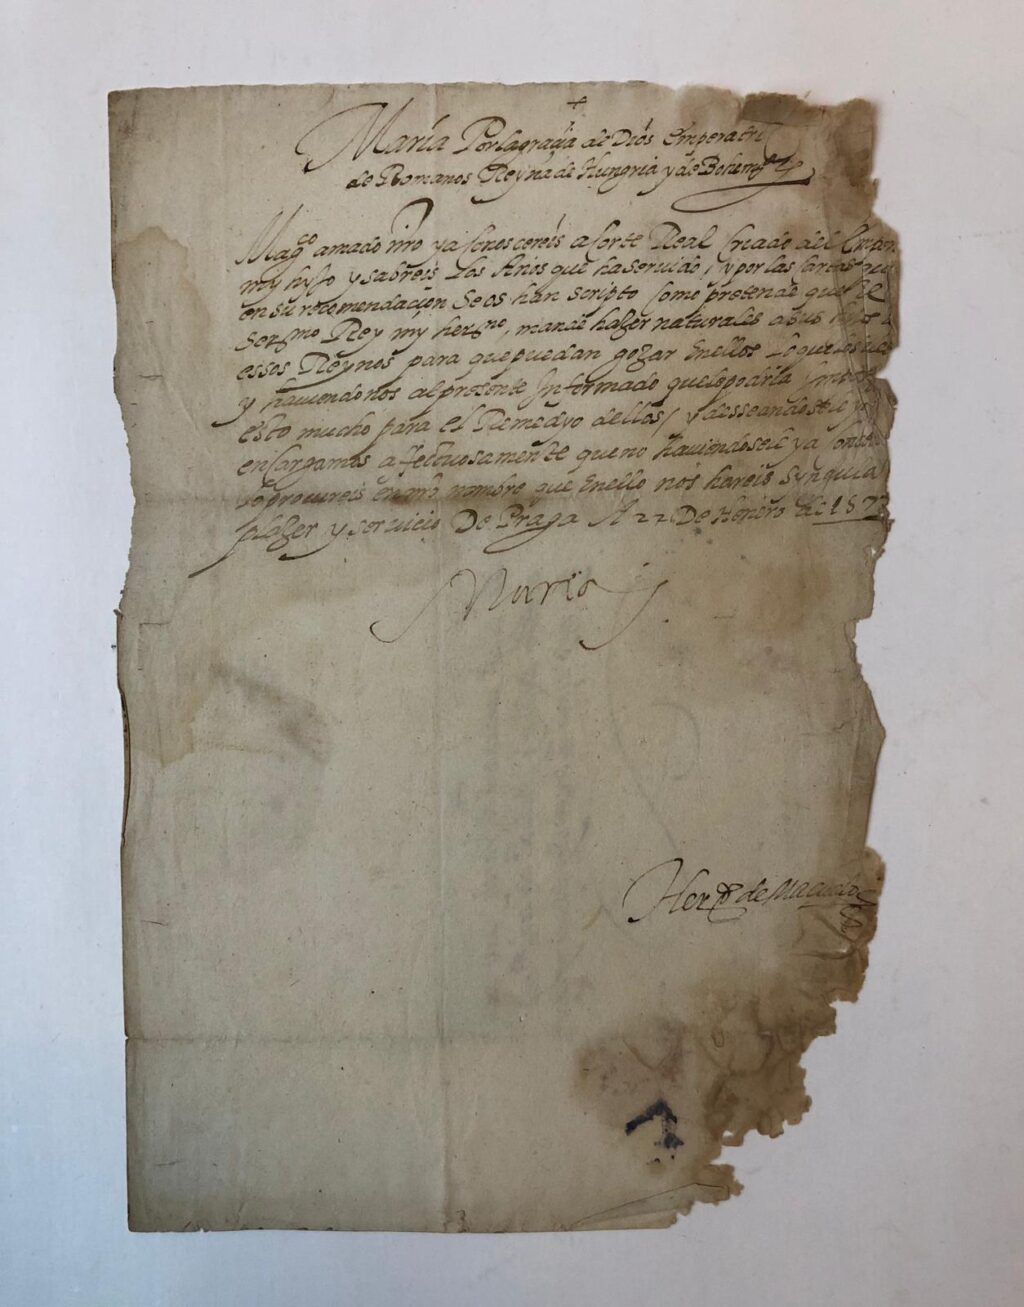 HABSBURG, MARIA VAN Brief van Maria, dochter van Karel V en zuster van Philips II, gehuwd met keizer Maximiliaan II van Habsburg, dd Praag 1577, gericht aan Baron Juan. Spaanse tekst (12 regels) met eigen handtekening “Maria”.